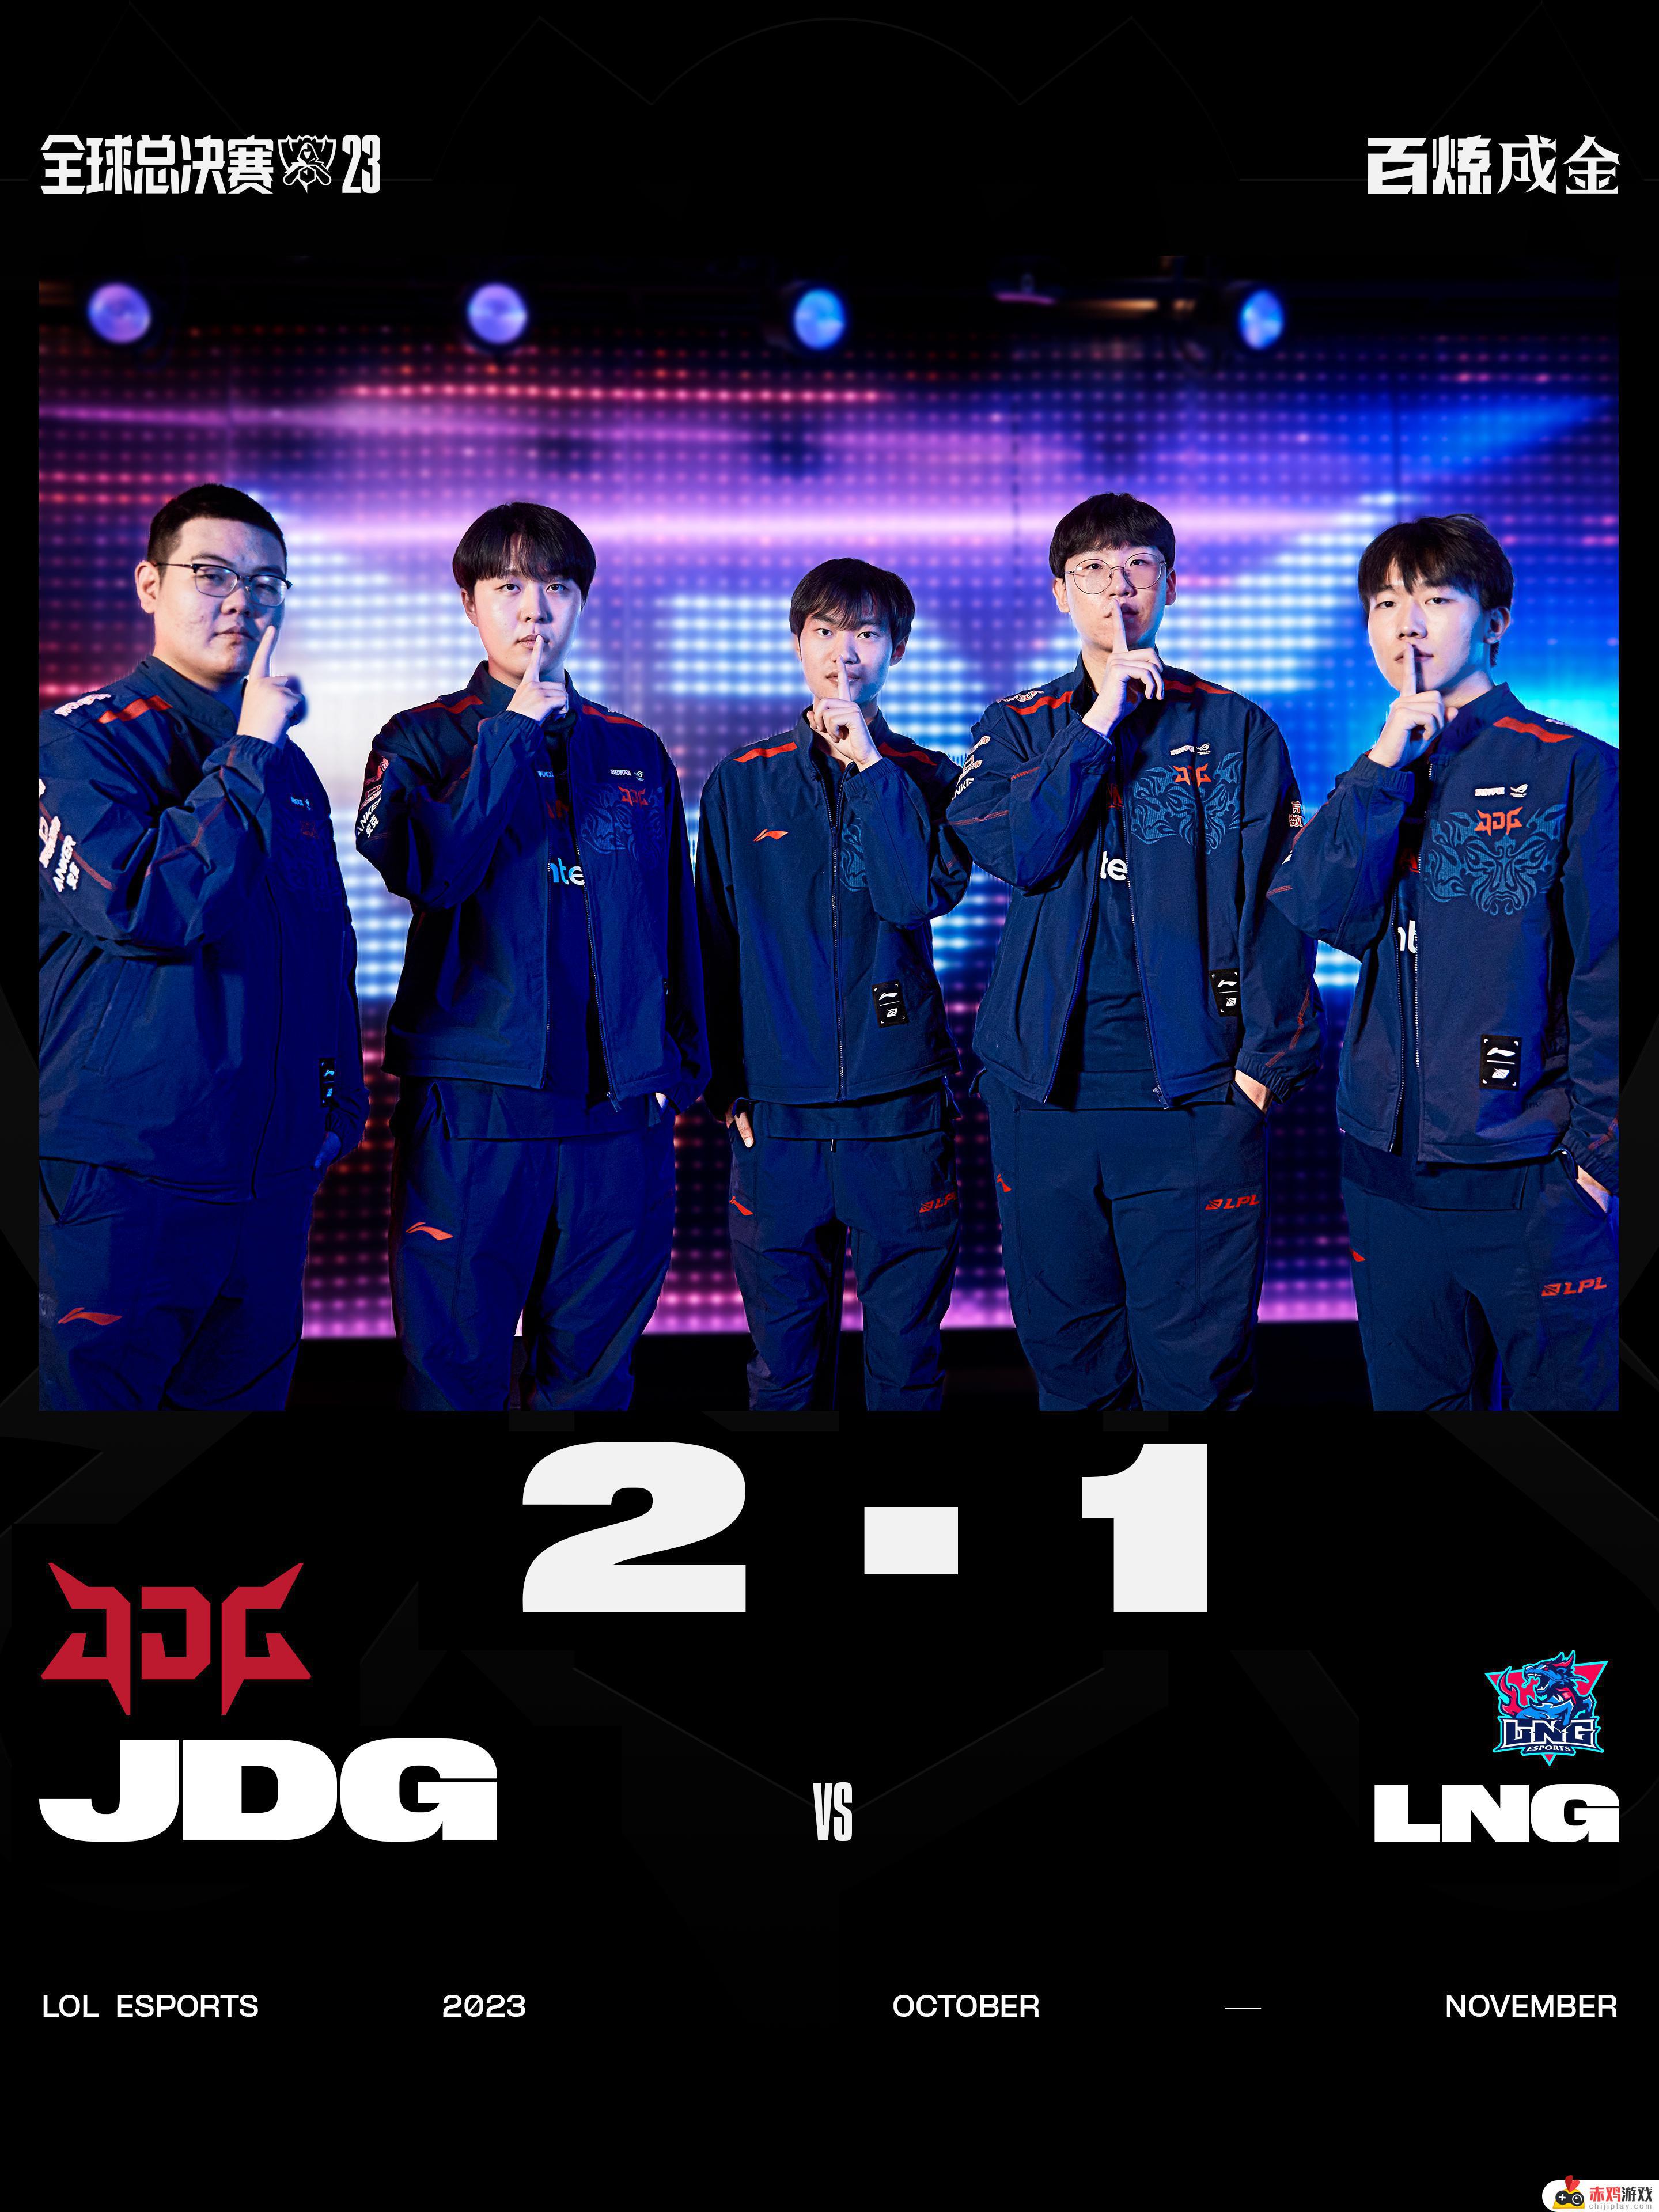 英雄联盟JDG 2-1 LNG，恭喜JDG获得比赛胜利！JDG战胜LNG，赢得英雄联盟比赛